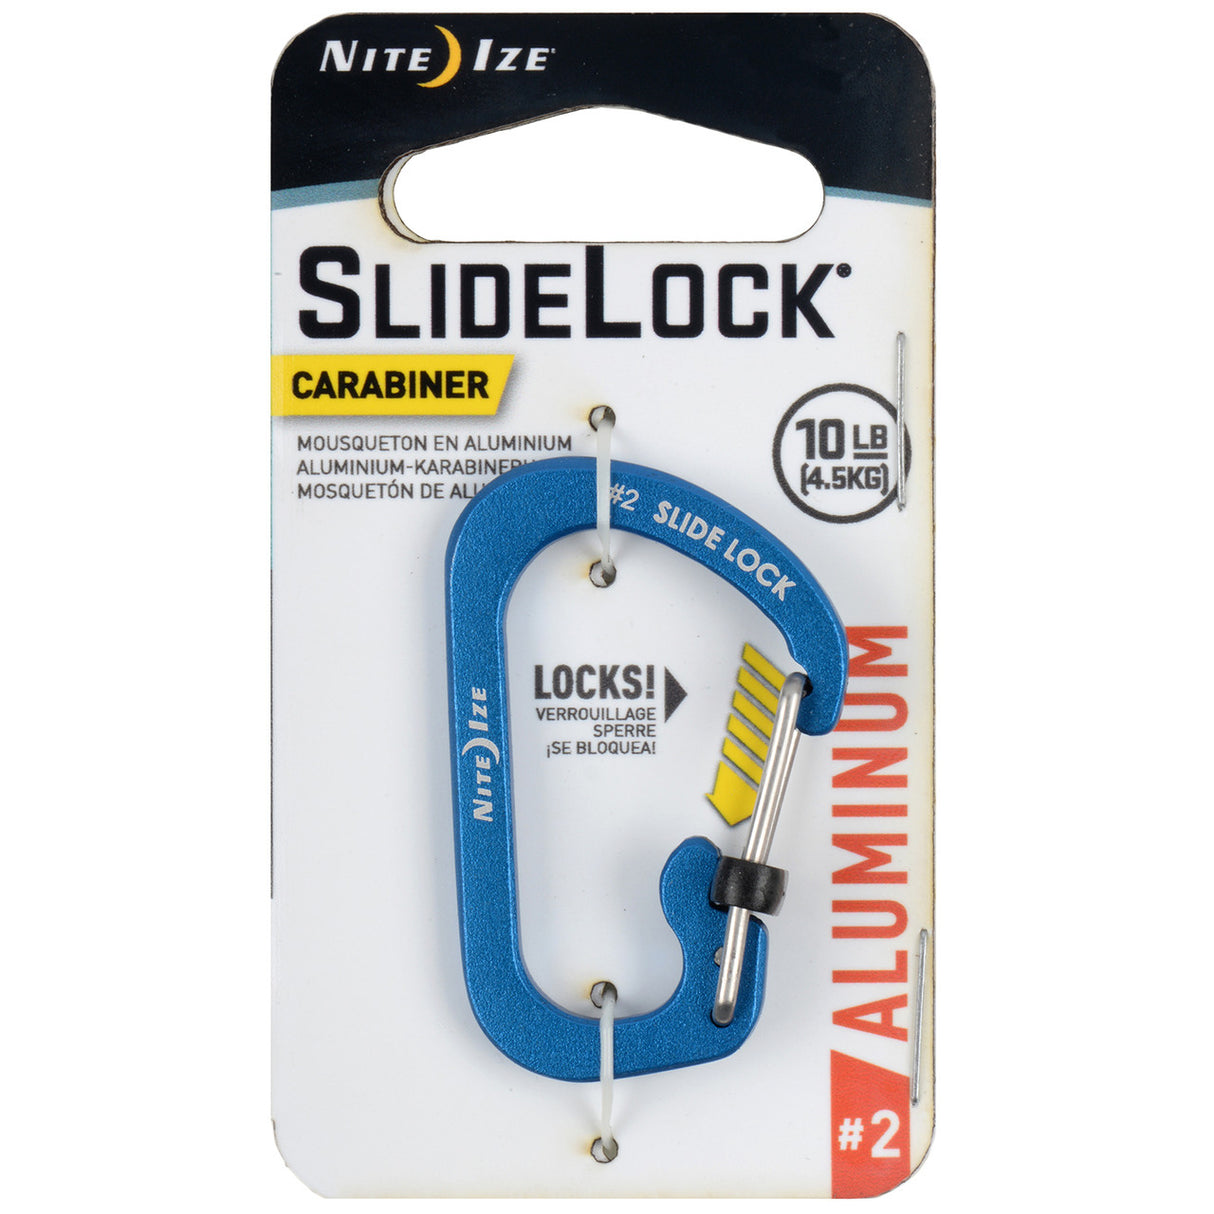 Slidelock® Carabiner Aluminum #2